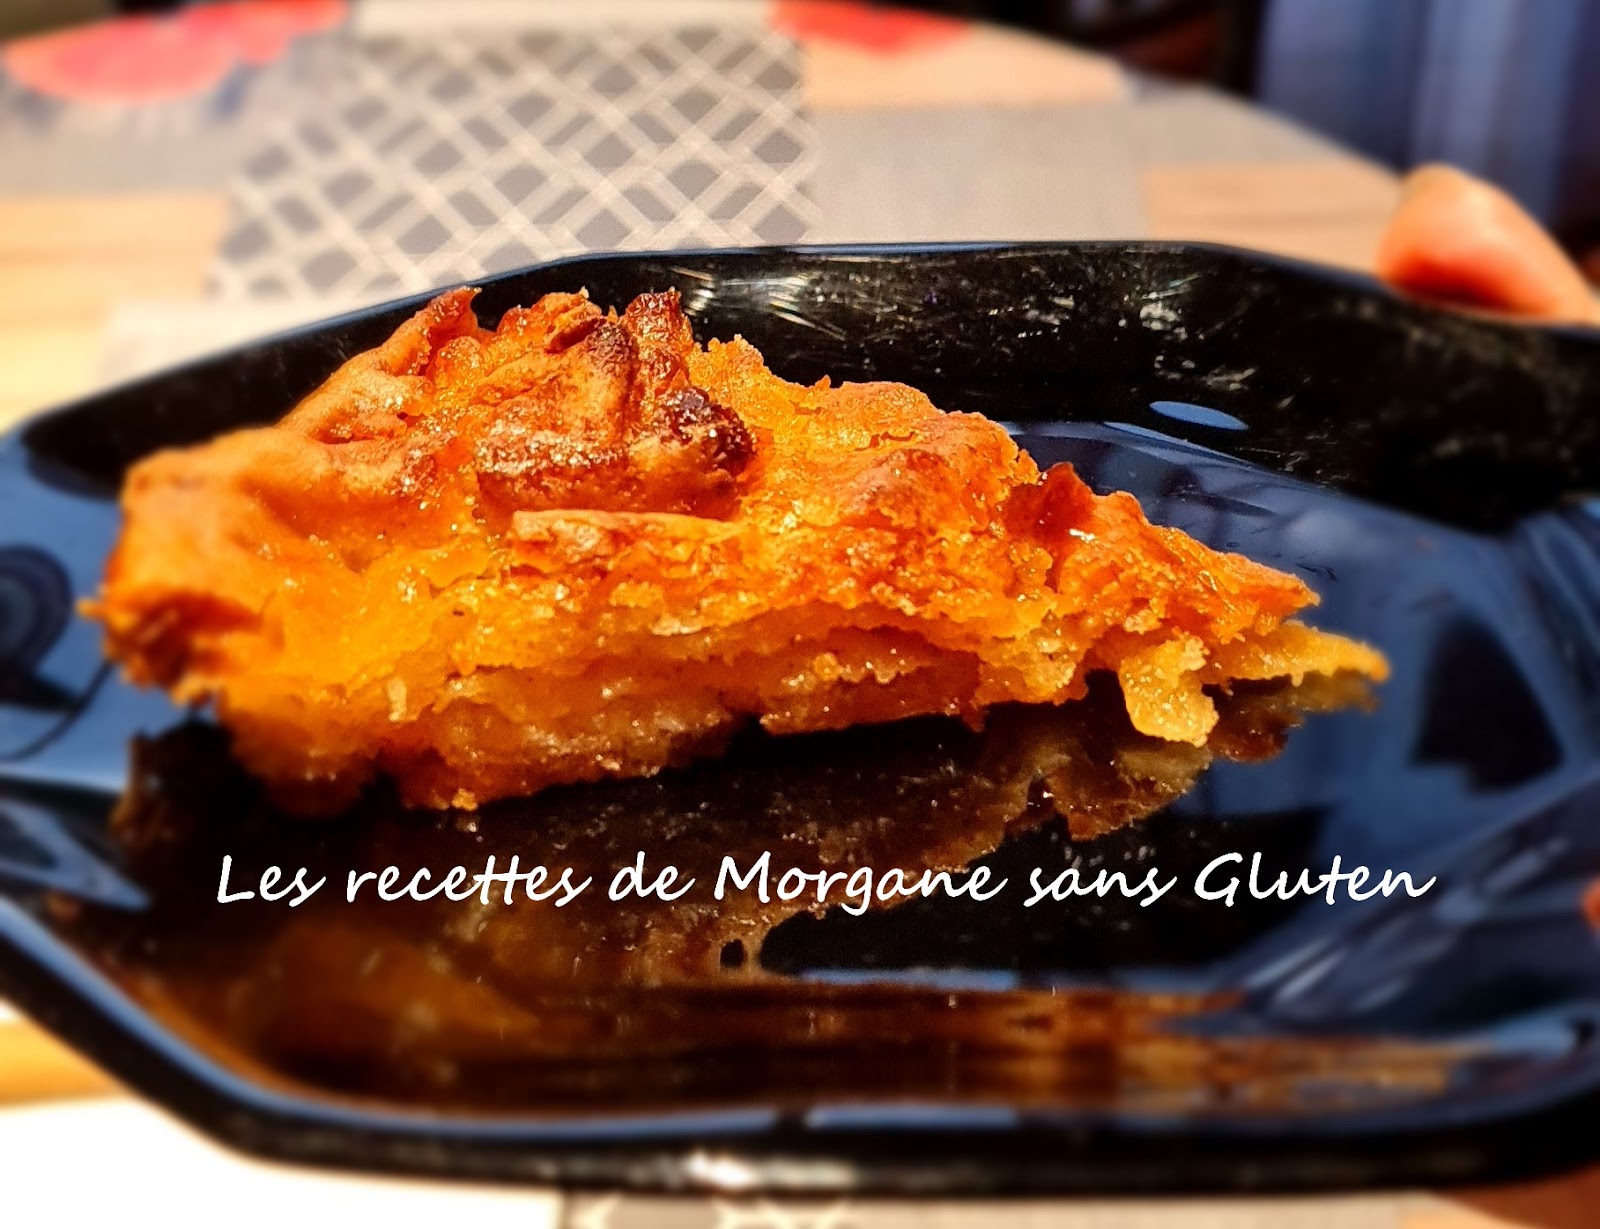 Les recettes de Morgane sans gluten: Recettes sucrées